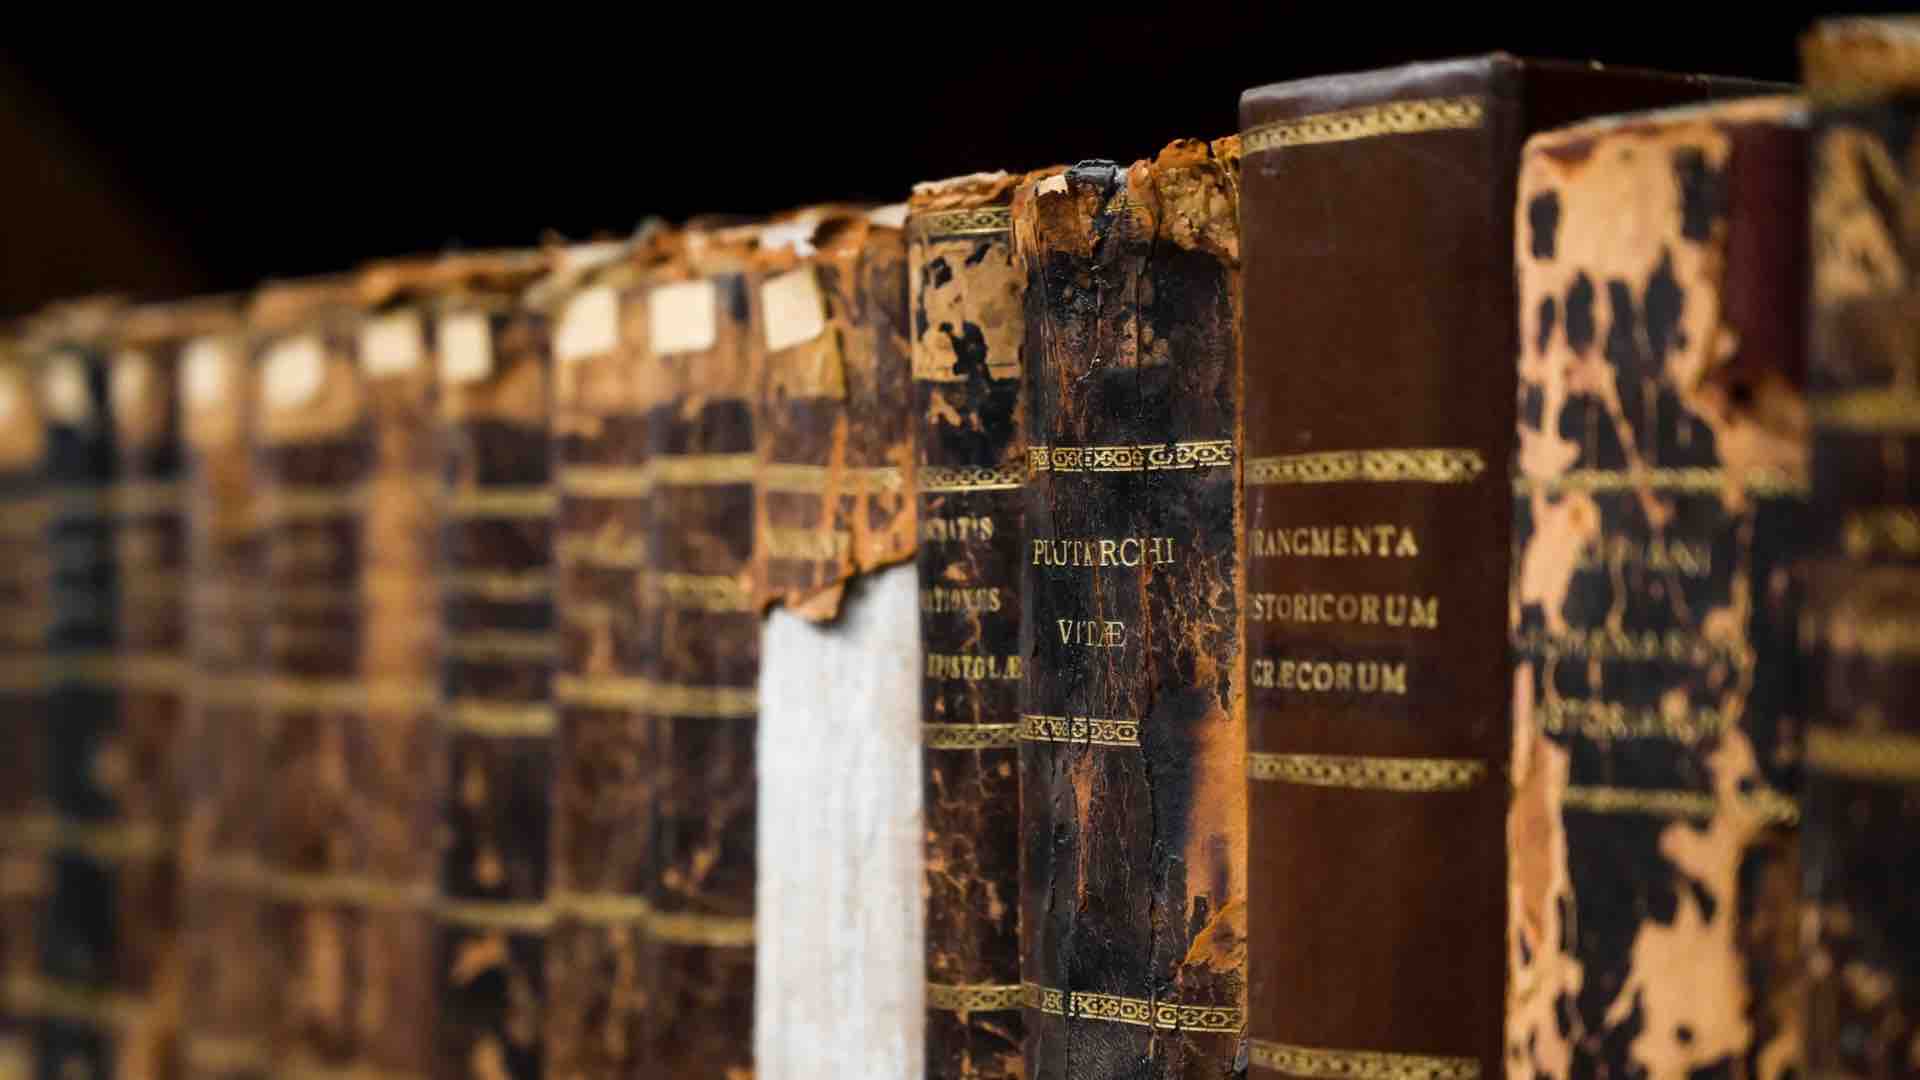 Libri Antichi